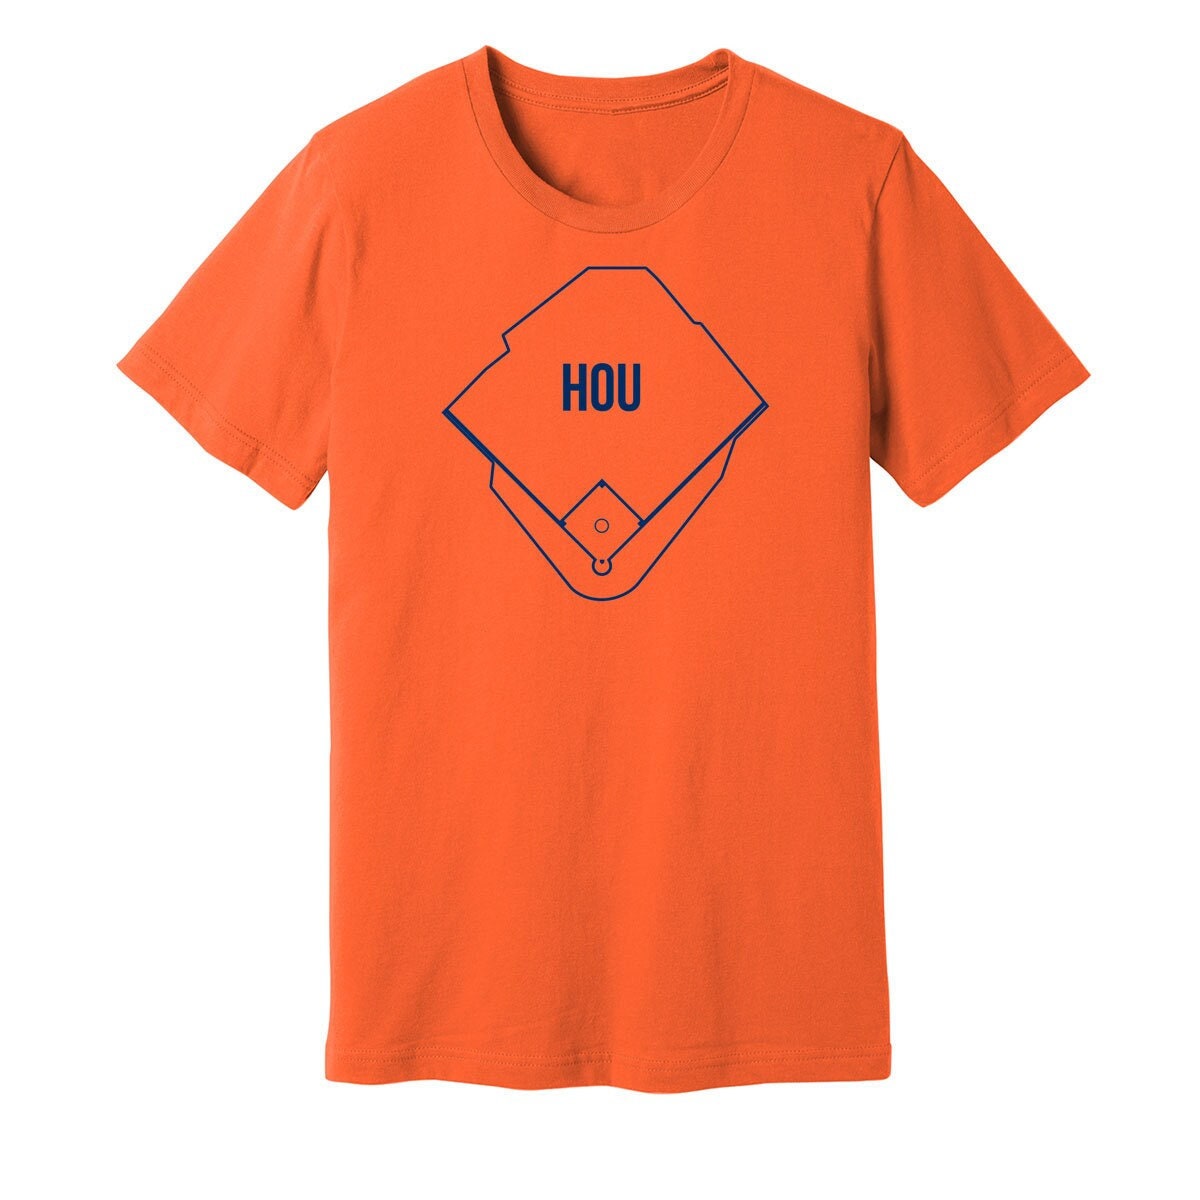 Los Astros T-shirt / Houston Astros Apparel / Astros Gear / H Town